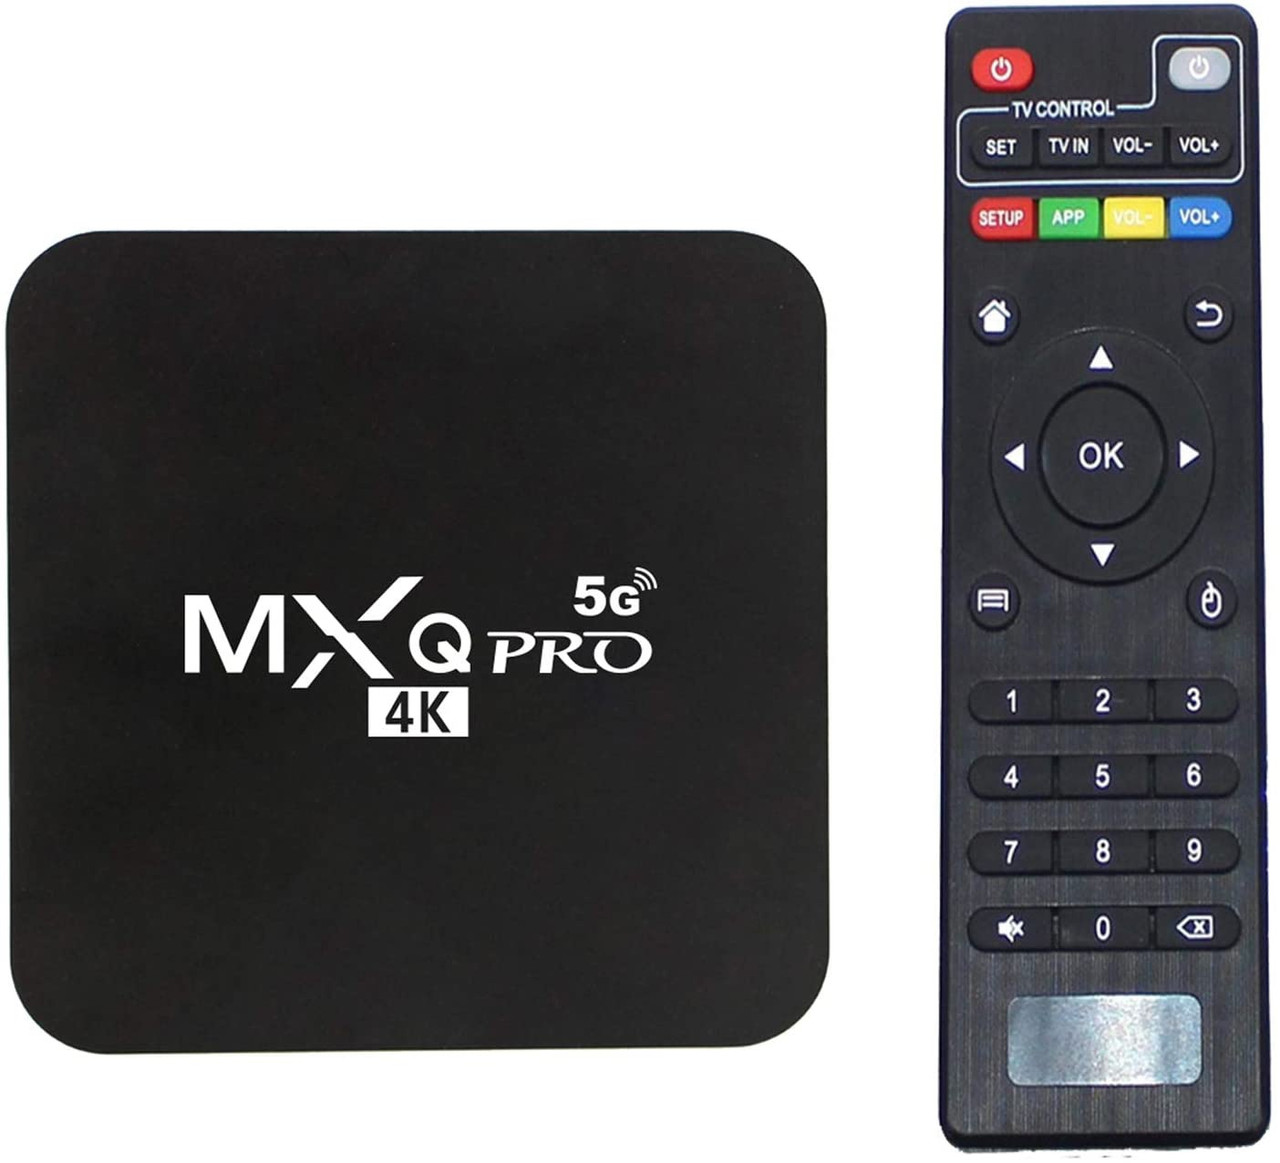 TV BOX ANDROID 10.1 2G+16G MXQ PRO 5G 4K UCD 3840X2160 - A. Ally & Sons